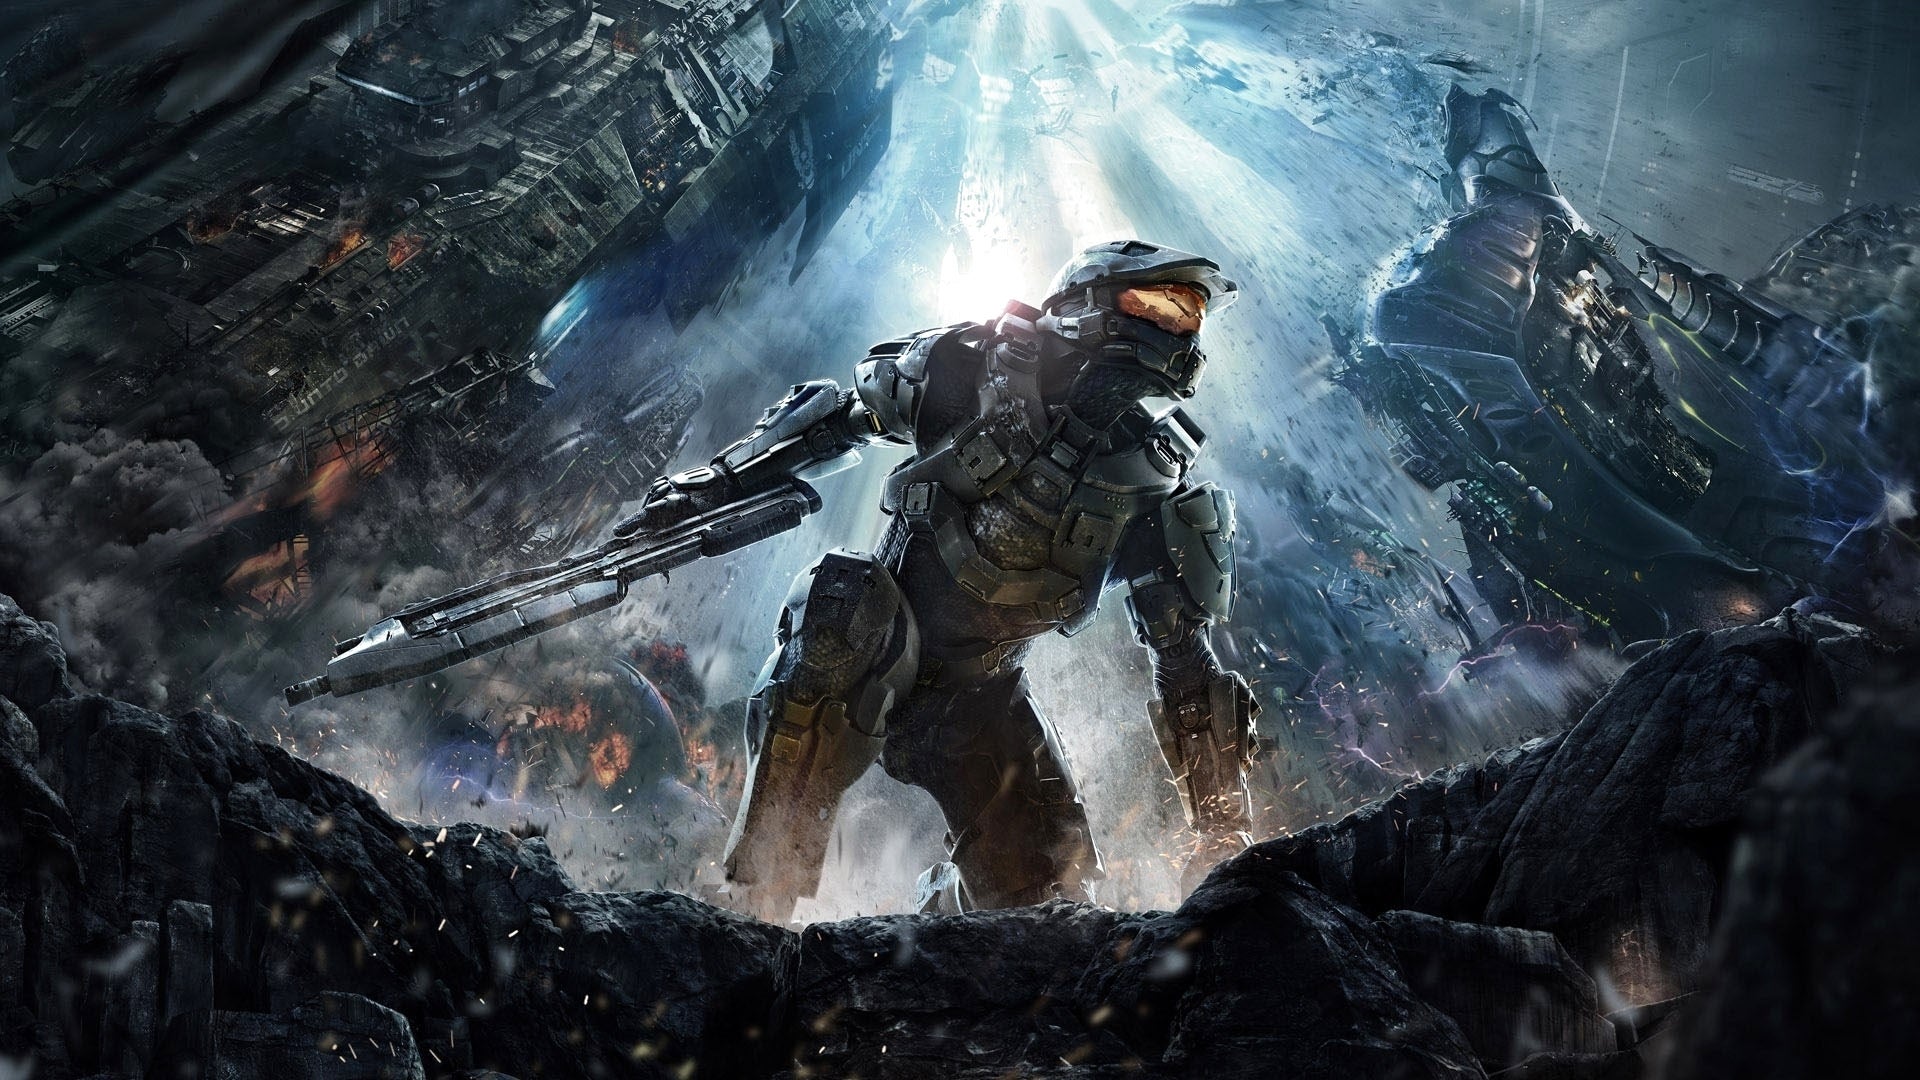 Bilder zu Gute Nacht, Halo! - Online-Dienste der Xbox-360-Teile werden eingestellt